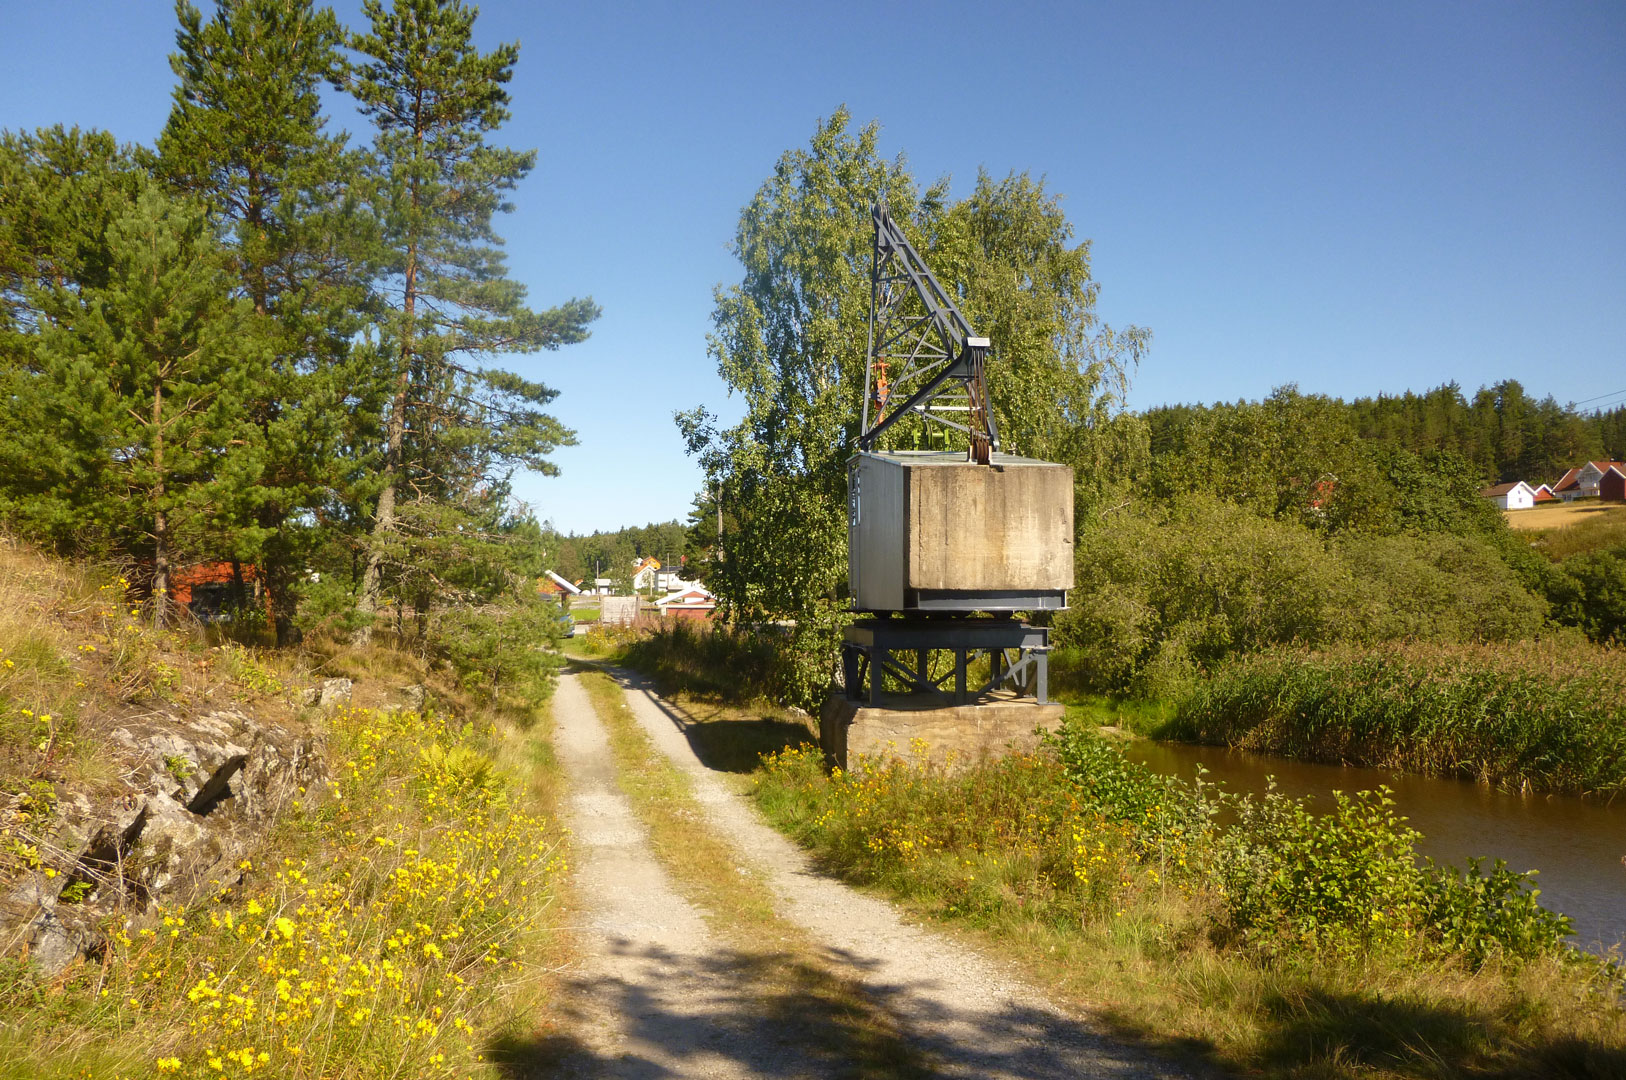 Krana på Skulerud ble brukt til omlasting av tømmer fra jernbanevogner og senere lastebil. I dag er krana restaurert men er ikke i bruk. Foto: Ulf I. Gustafsson Riksantikvaren